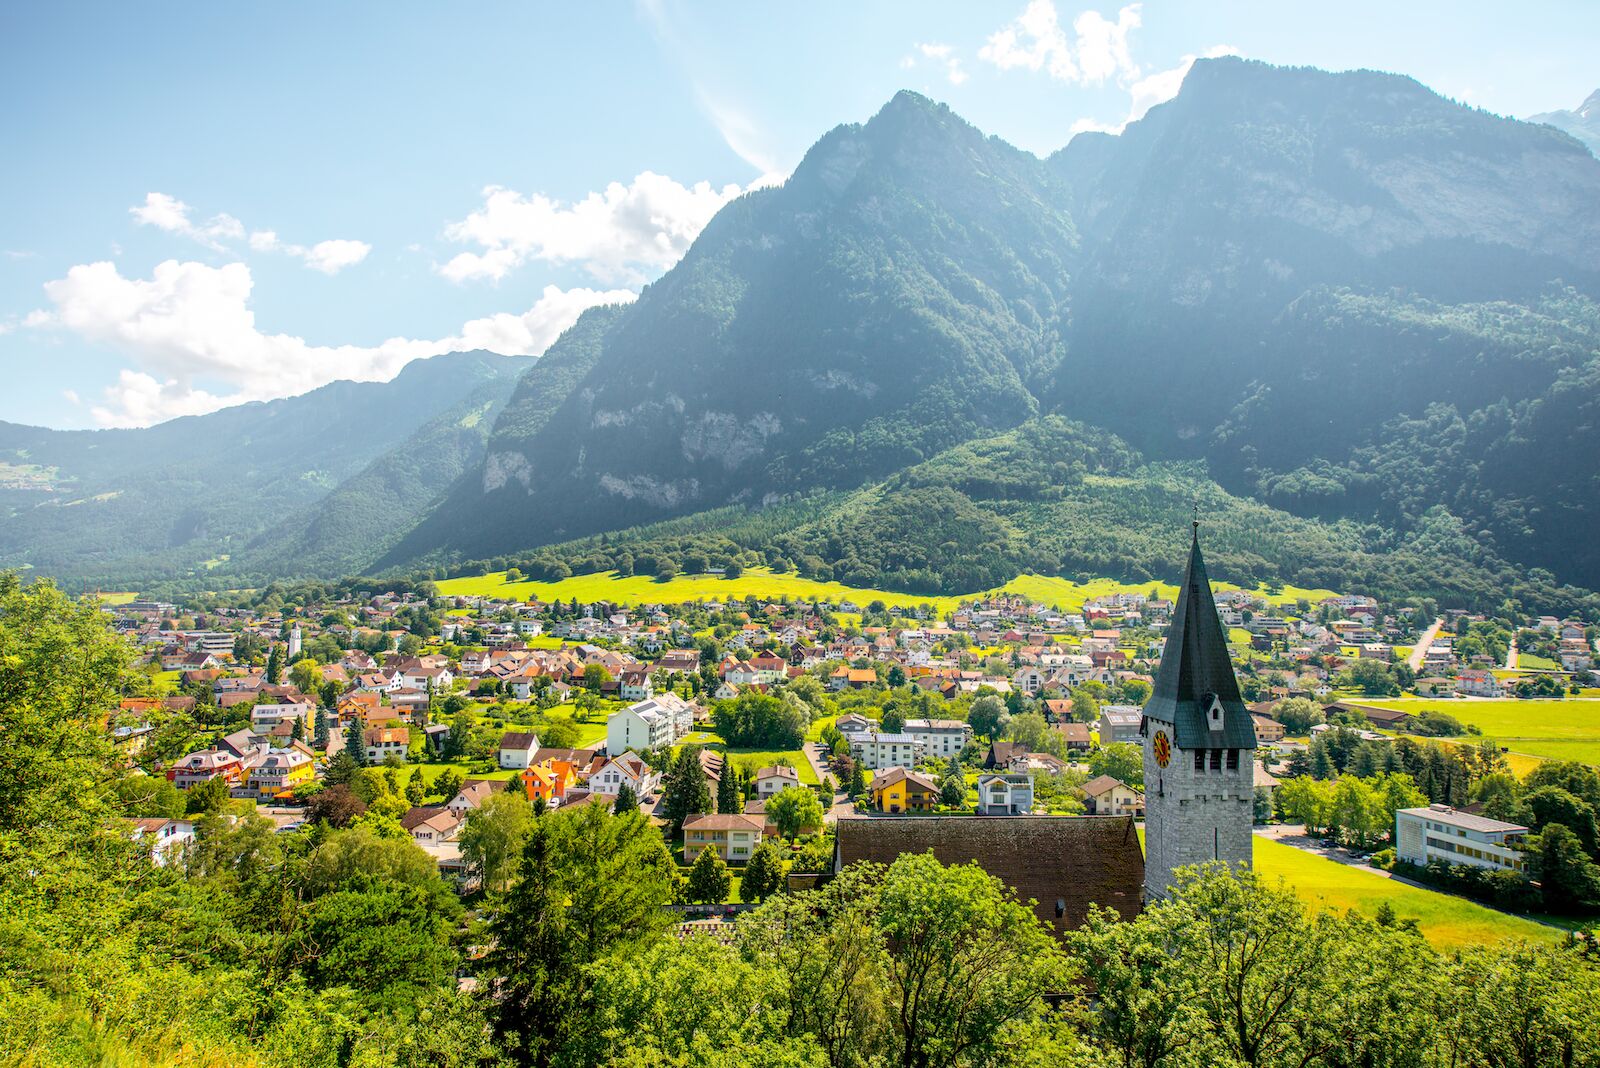 View of the town of Balzers in Liechtenstein